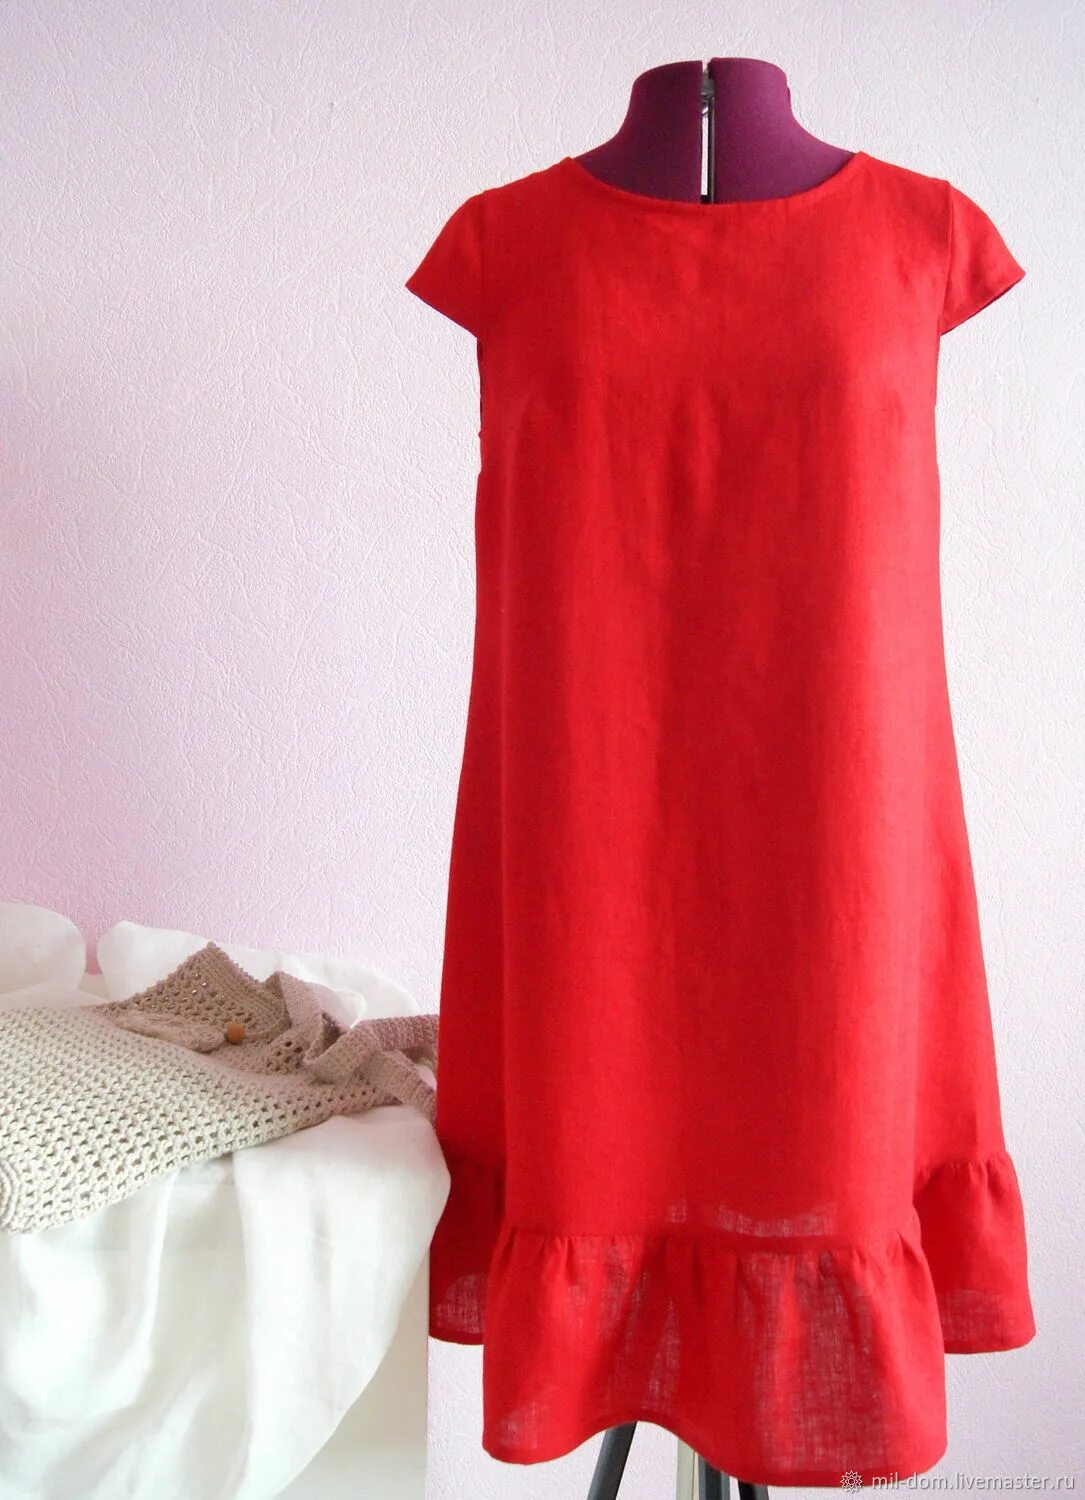 Красное платье из льна. Платье лен красный цвет. Льняное платье красного цвета.